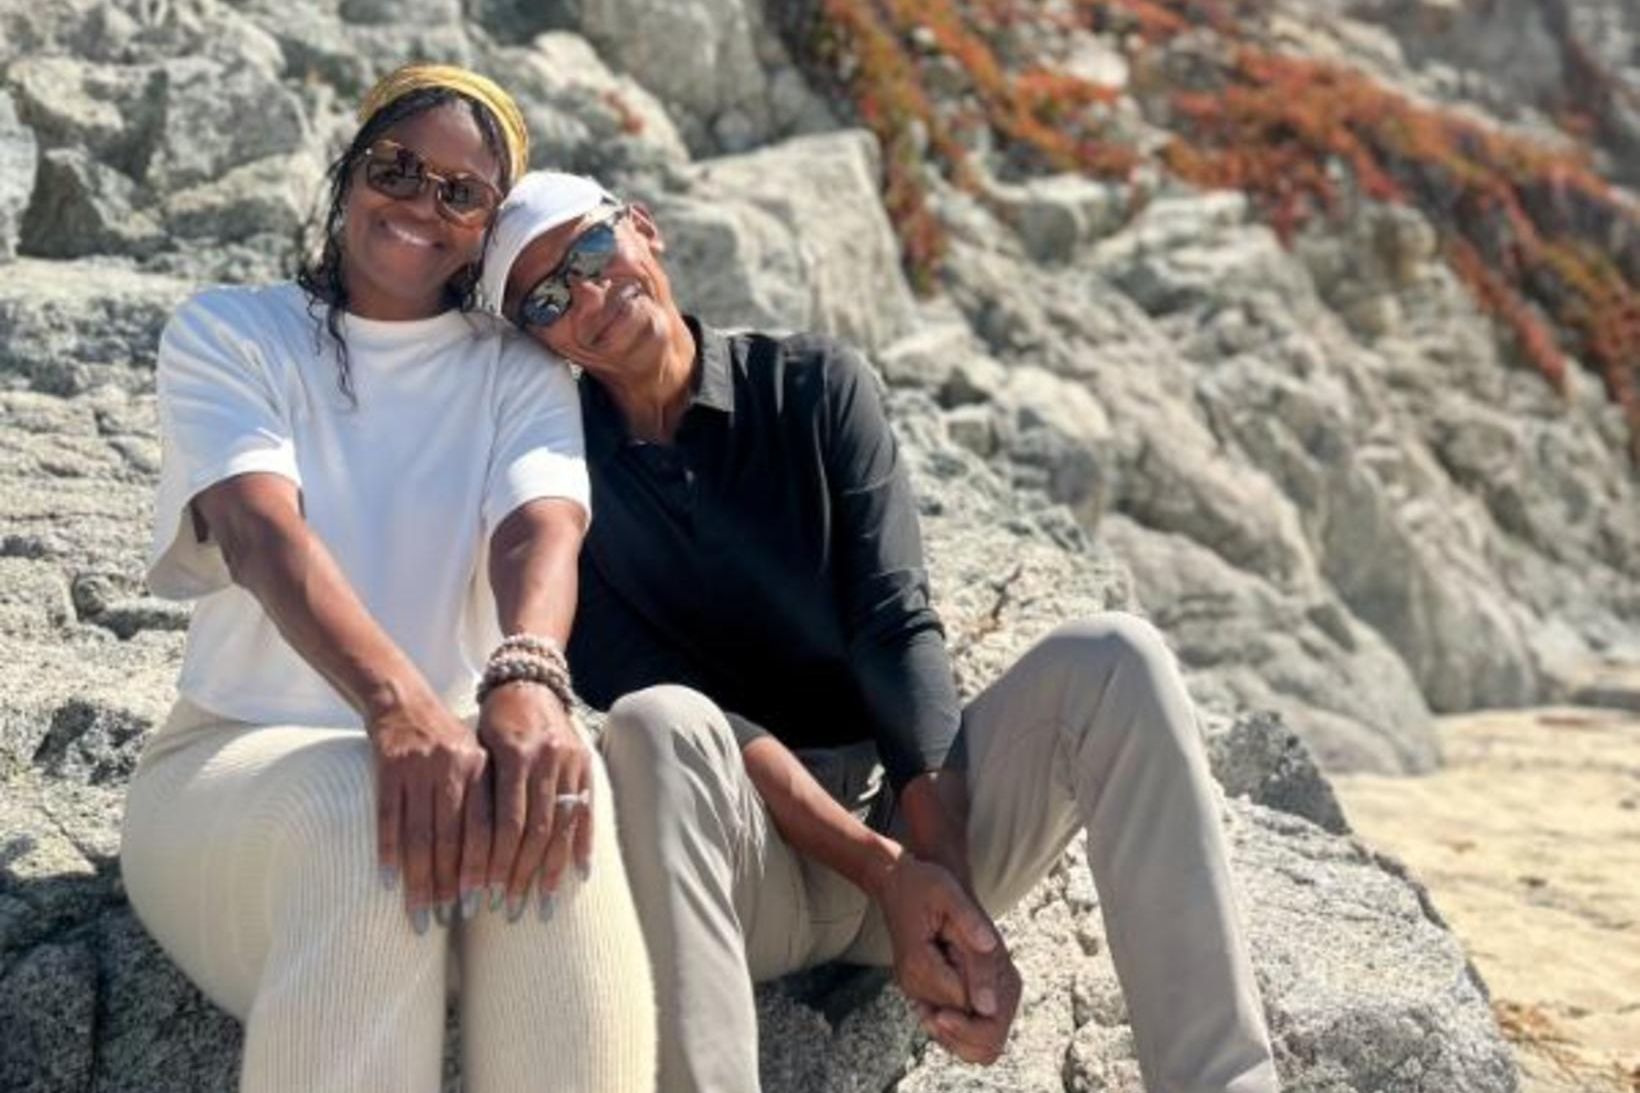 Barack Obama birti sæta mynd af sér og Michelle Obama …